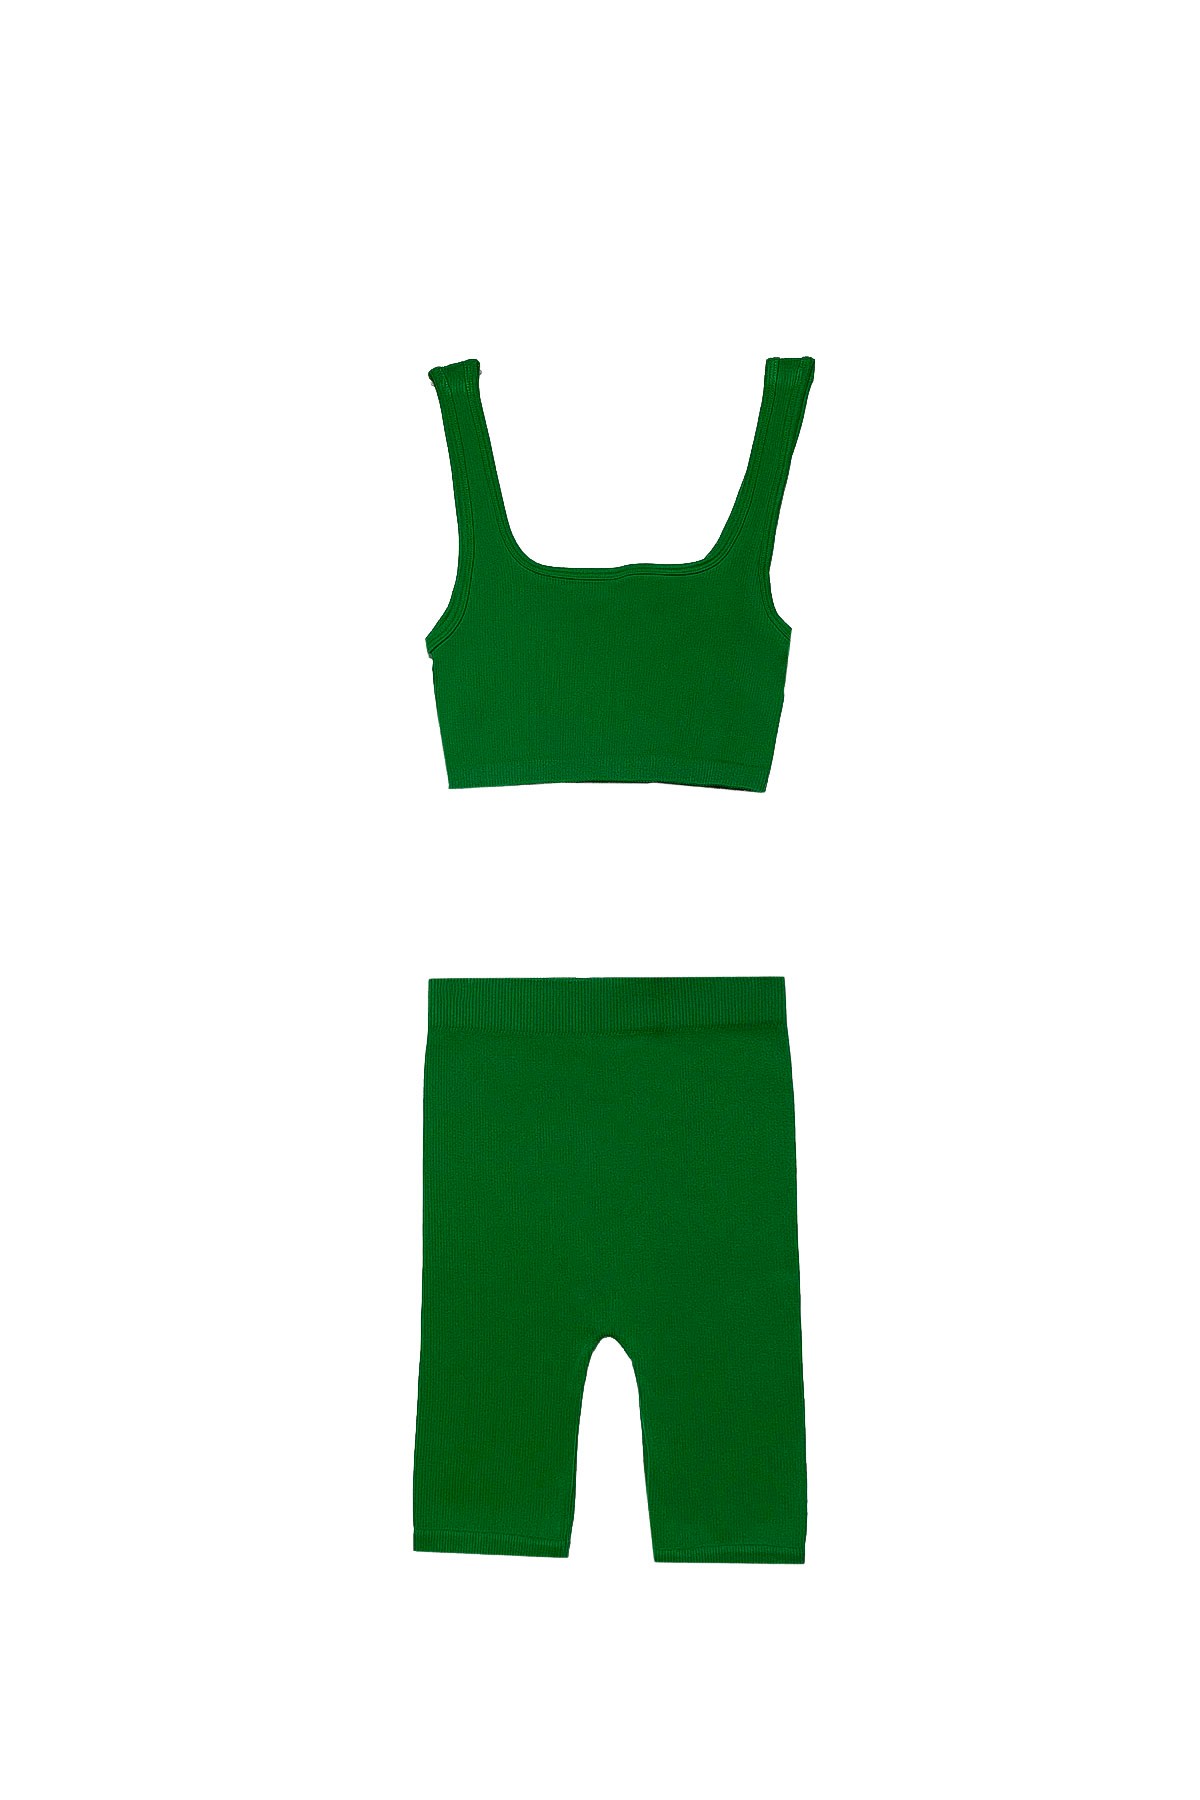 Geo - لباس بدون درزات للبضعة - أخضر